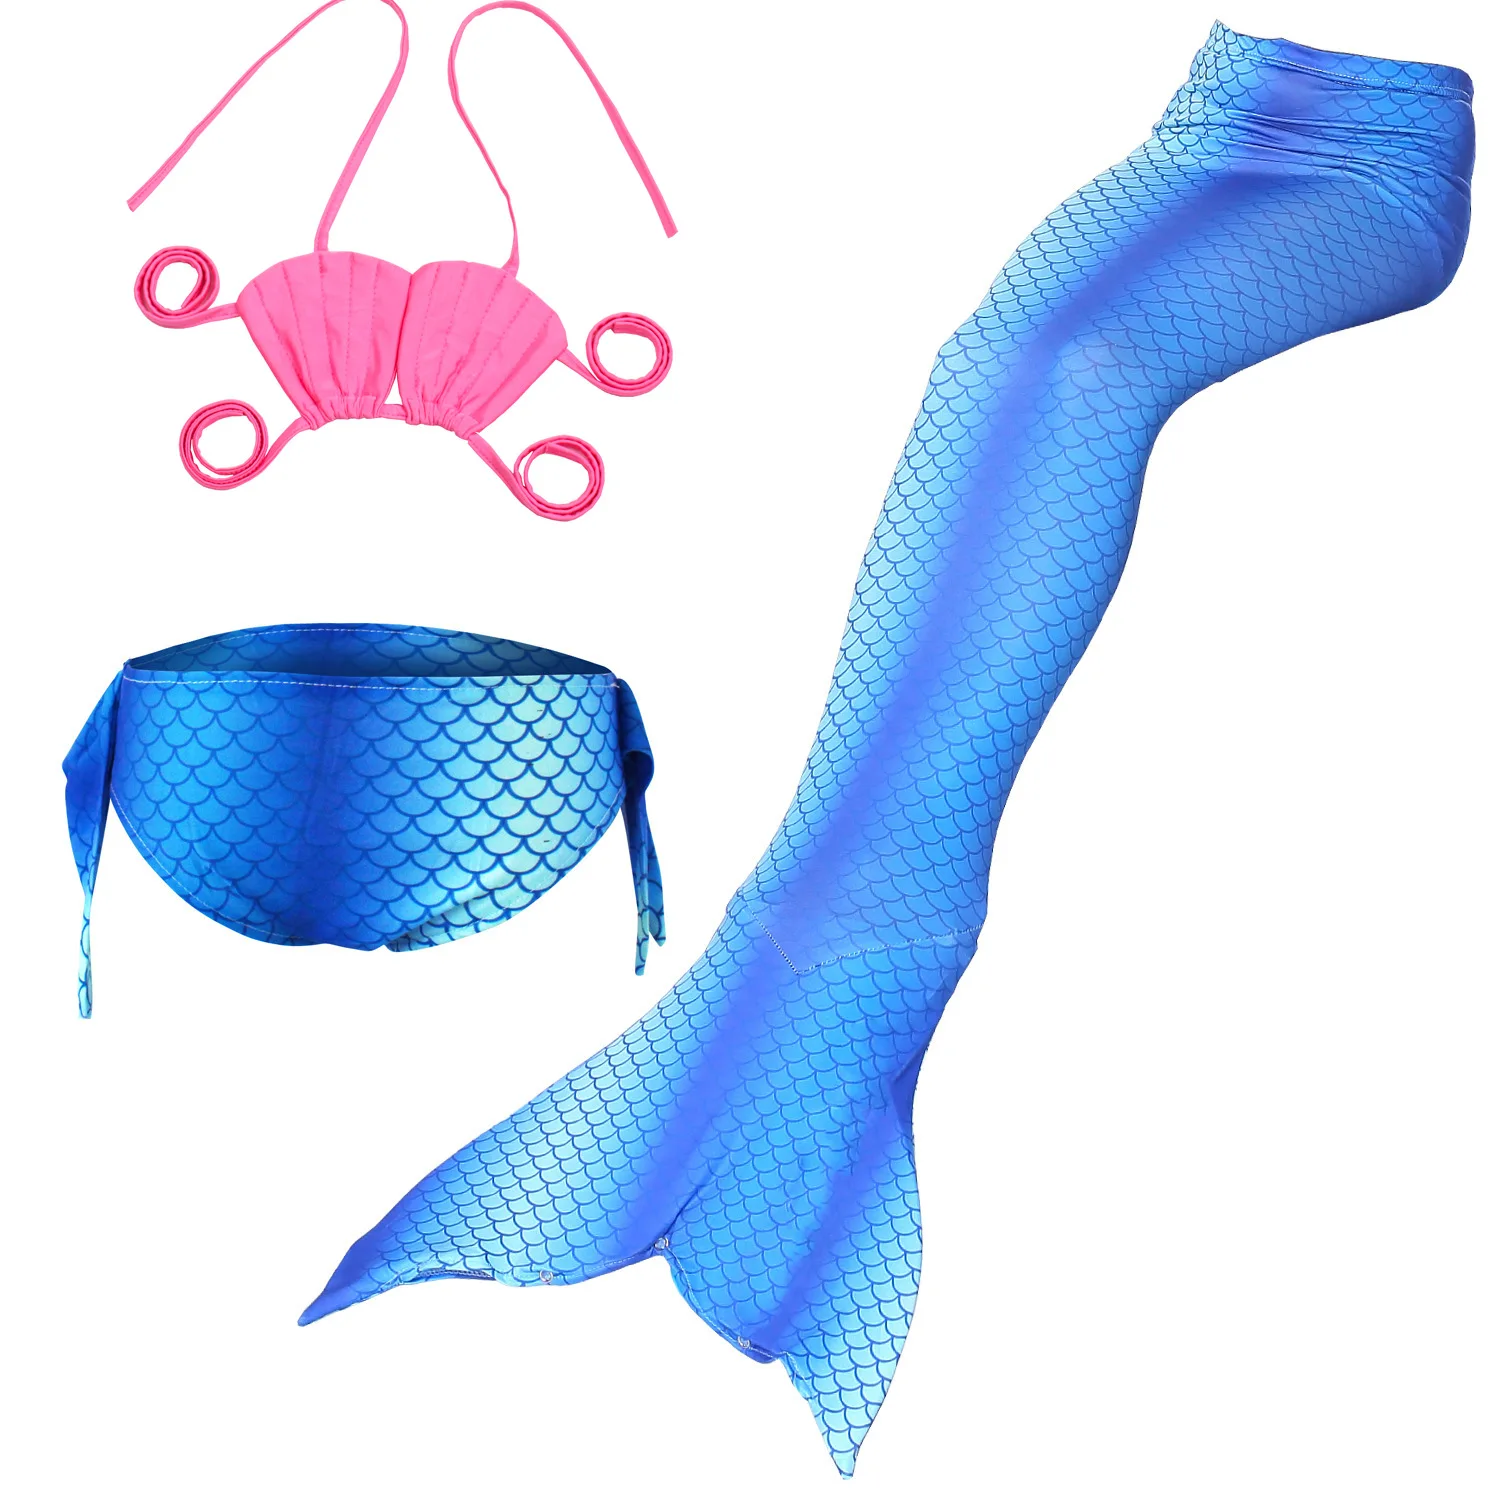 Ариэль Фэнтези хвосты маленькой русалки для плавания детей купальники Русалочки карнавальный костюм косплей девушки купальник Хэллоуин дети - Цвет: D3pcs